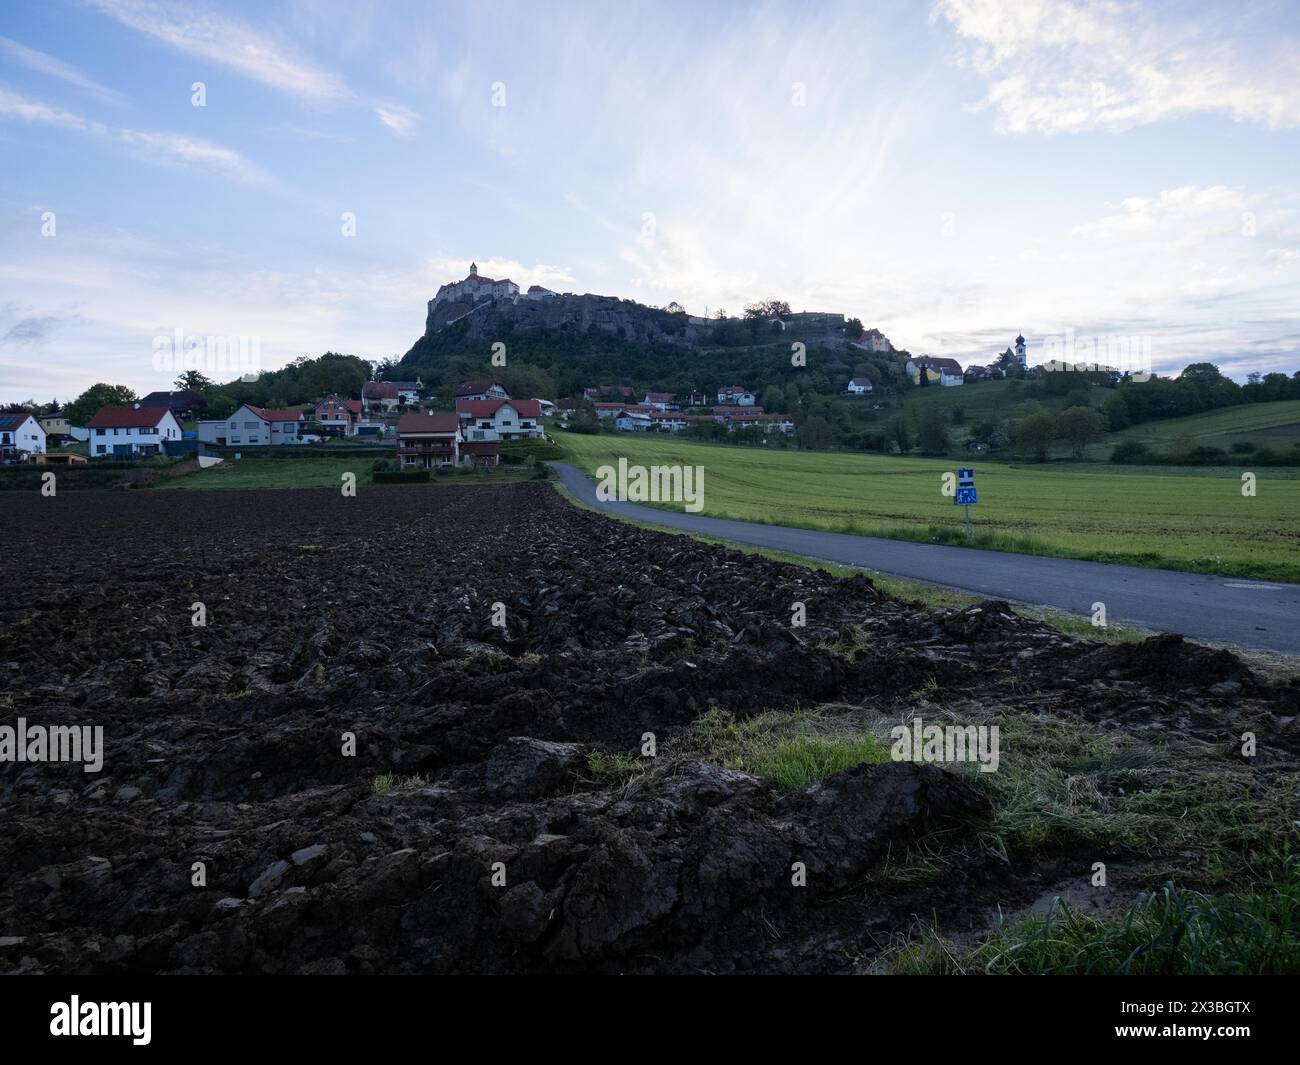 Al mattino presto, percorso che porta al castello di Riegersburg, campo di fronte, castello di Riegersburg, regione vulcanica della Stiria, Austria, Europa Foto Stock